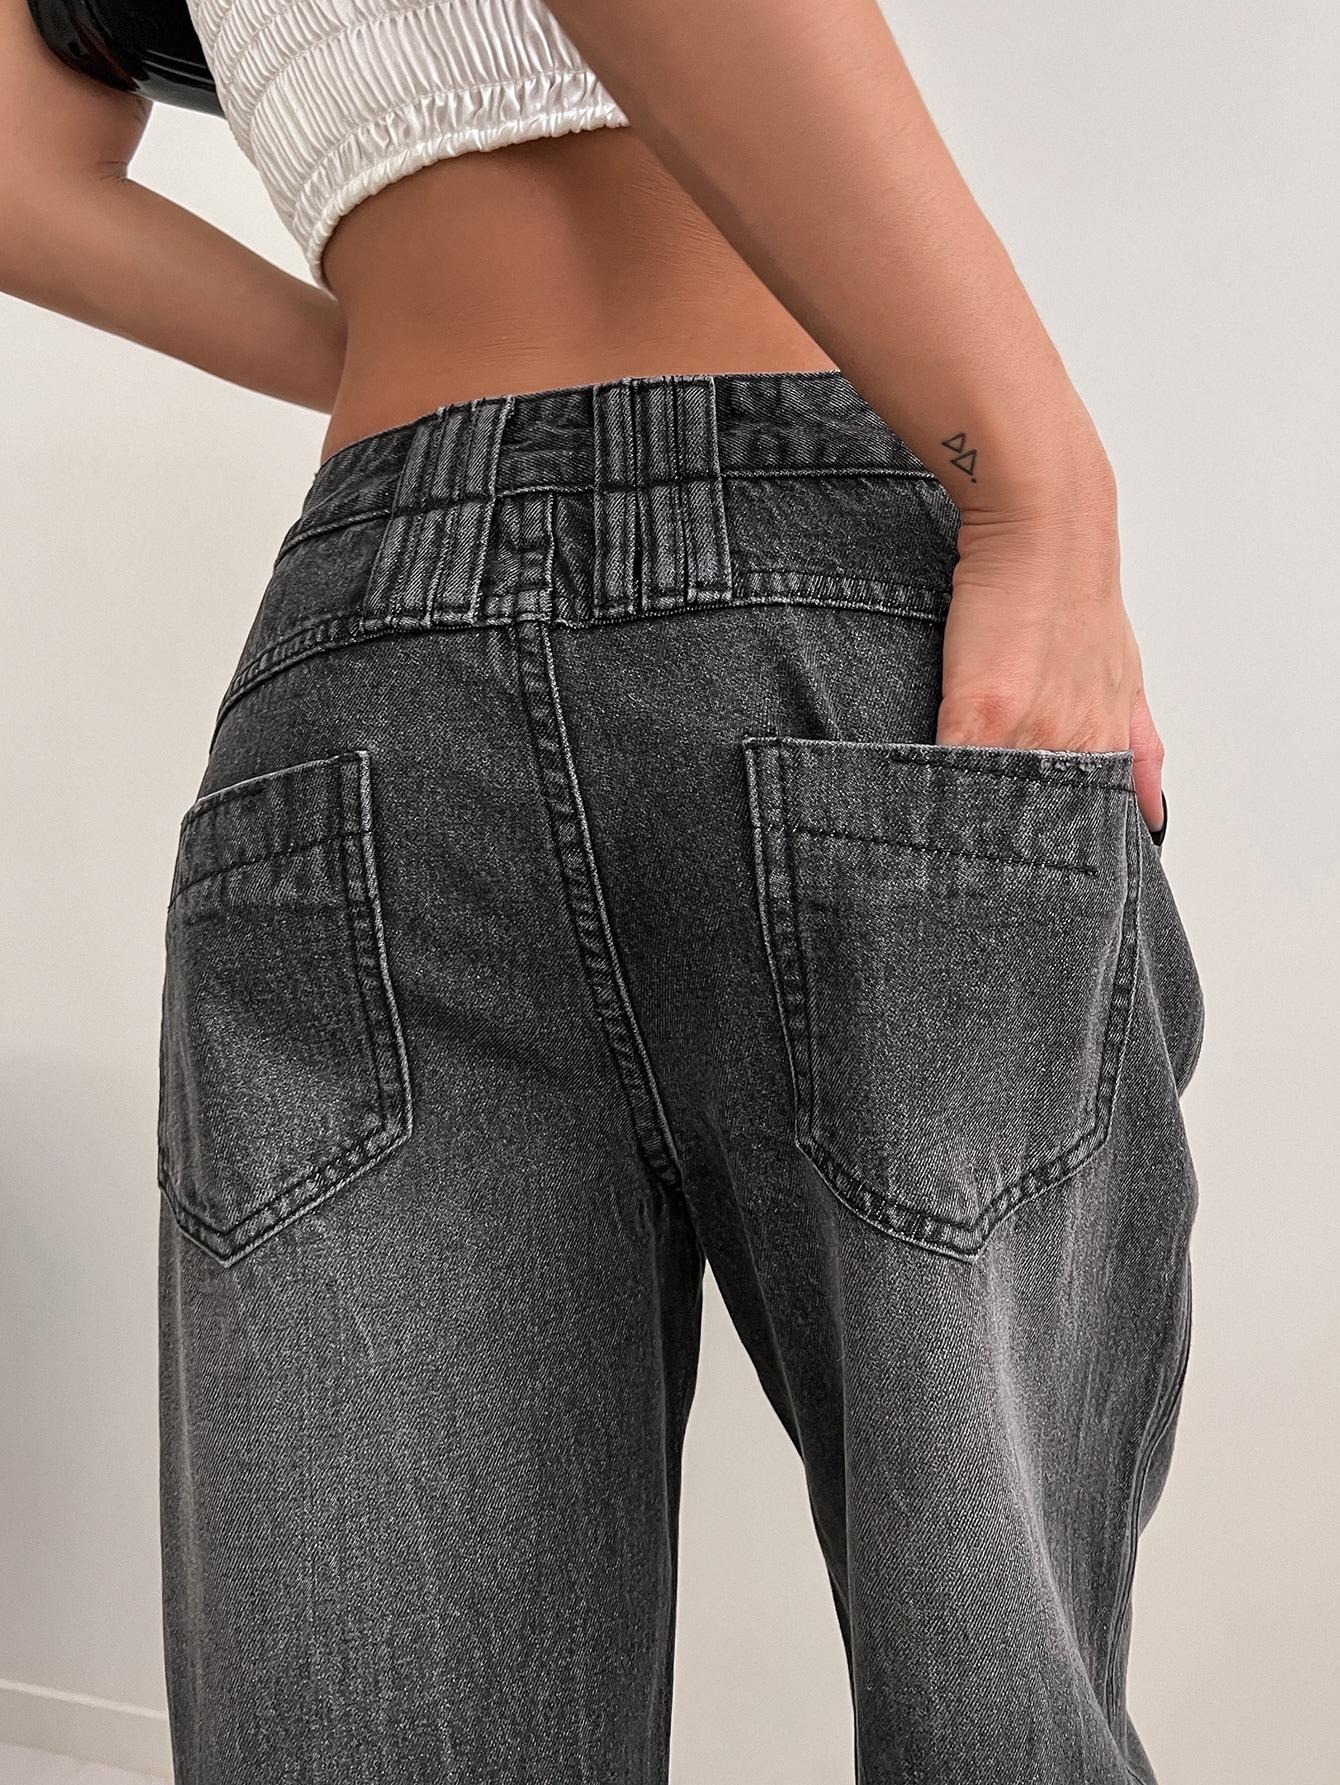 szare spodnie jeans szerokie nogawki kieszenie